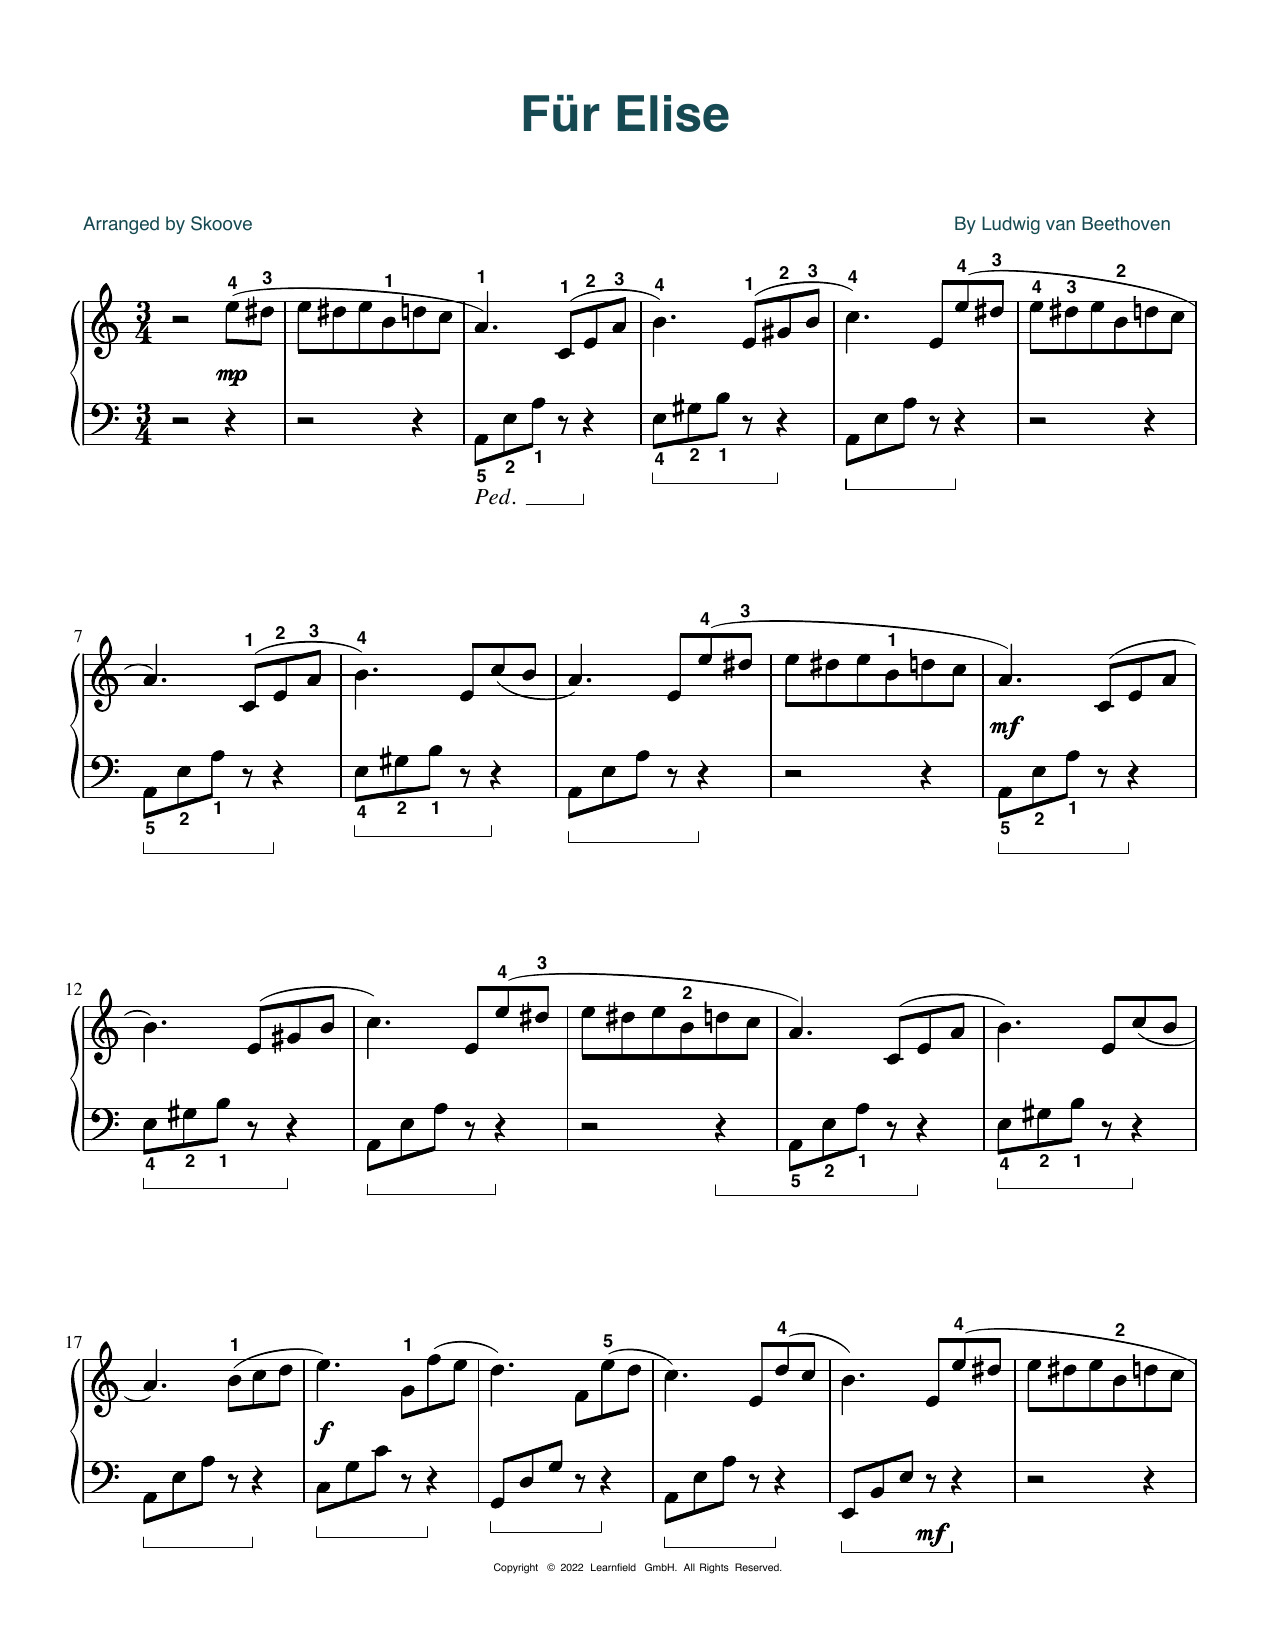 Download Ludwig van Beethoven Fur Elise (arr. Skoove) Sheet Music